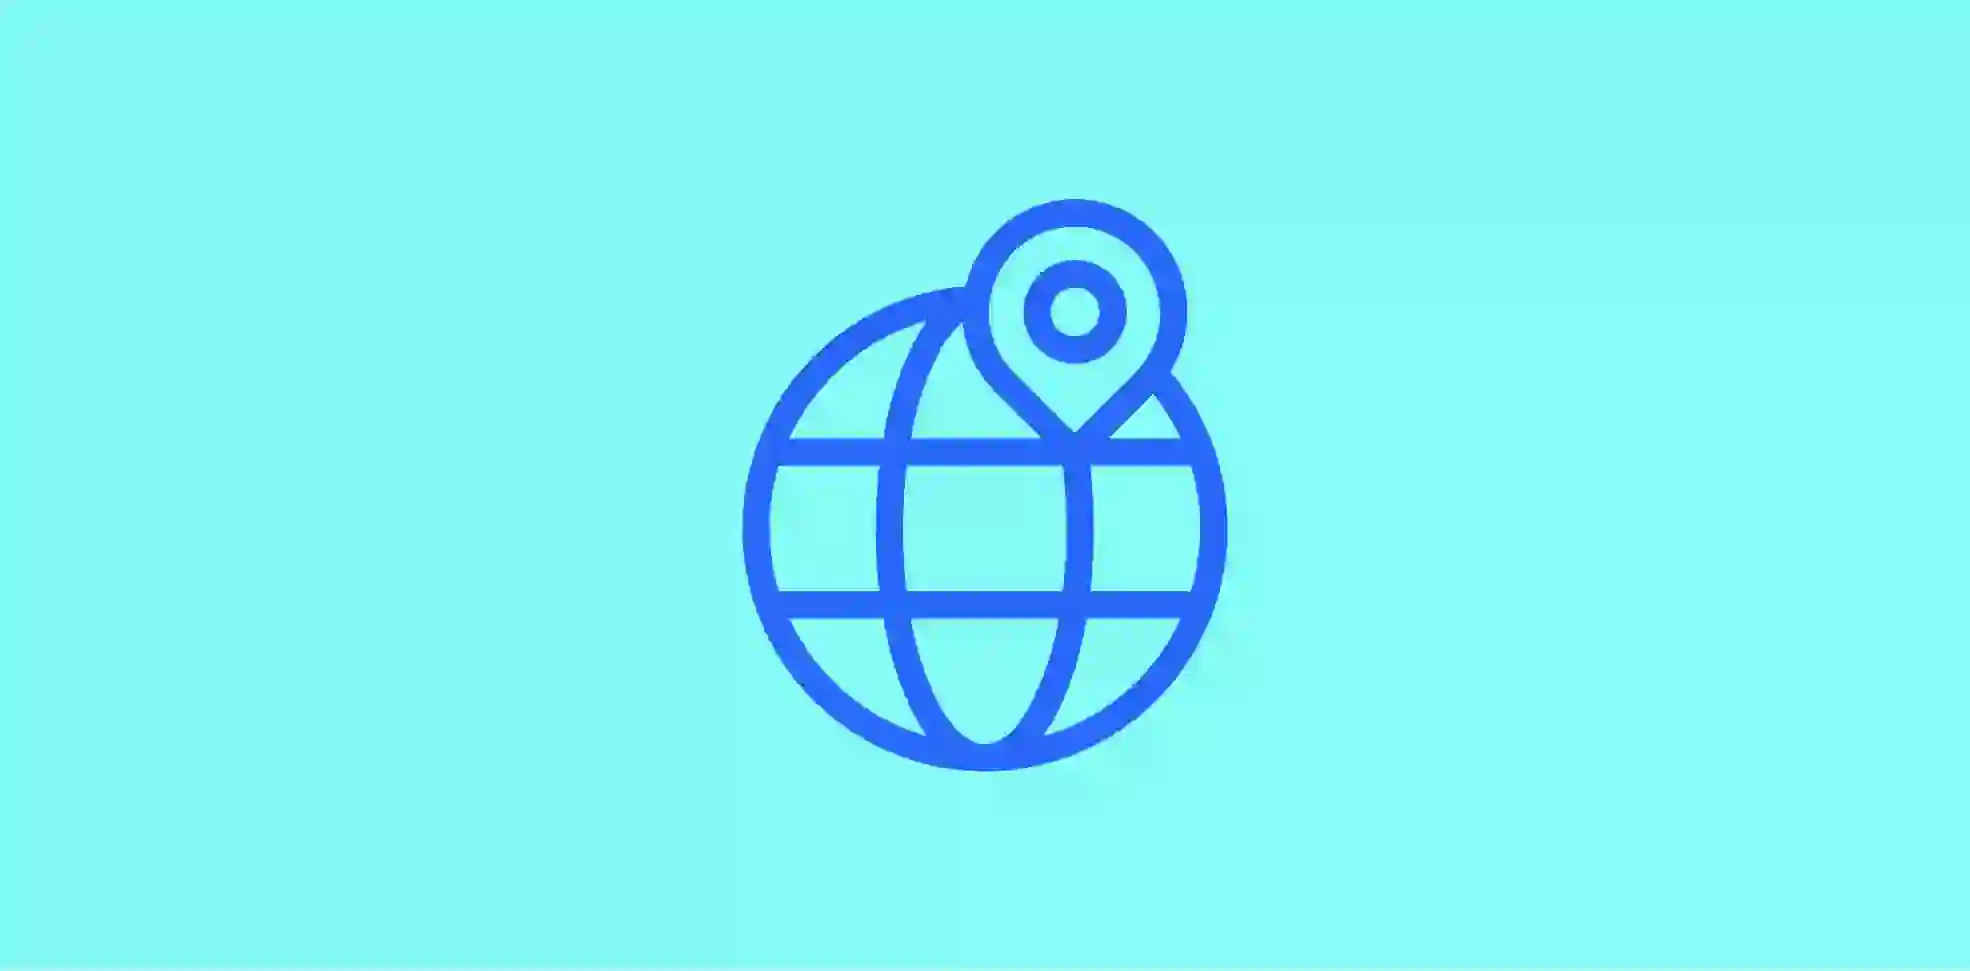 globe symbol on blue background